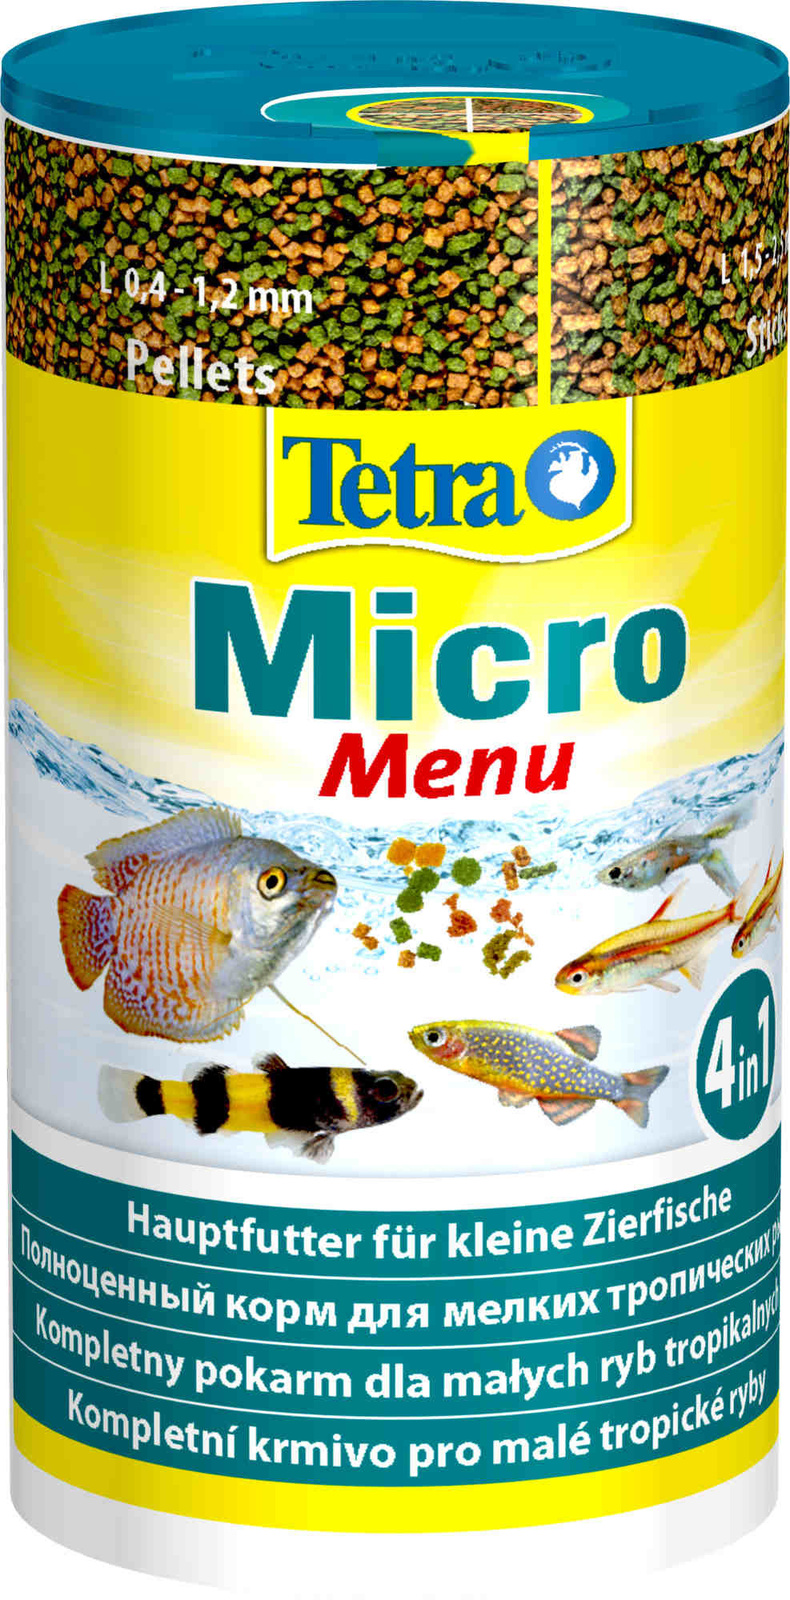 Tetra (корма) Tetra (корма) корм для всех видов мелких рыб, четыре вида корма (65 г) tetra корма tetra корма корм для всех видов рыб хлопья 20 г